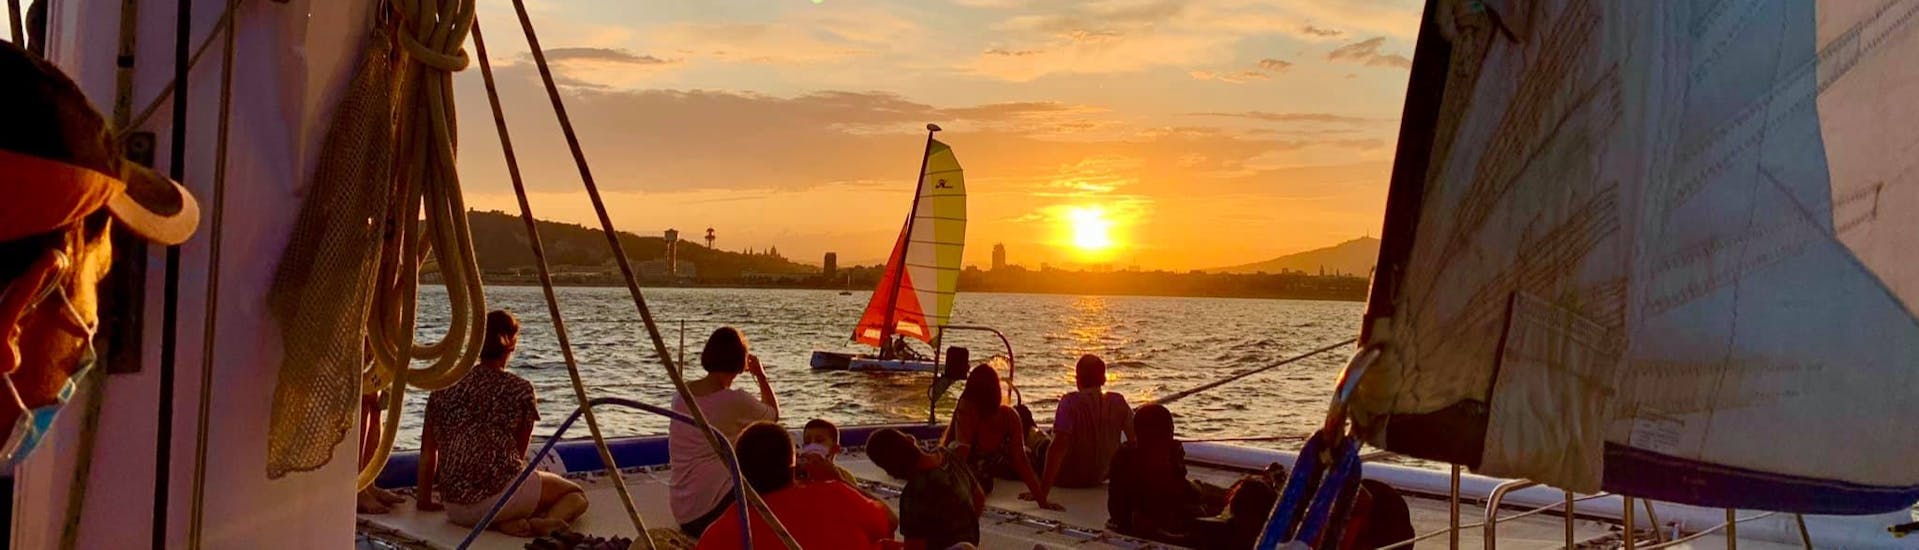 Menschen genießen den Sonnenuntergang während einer Katamarantour um Barcelona mit dem Katamaran Orsom Gotland Charter.